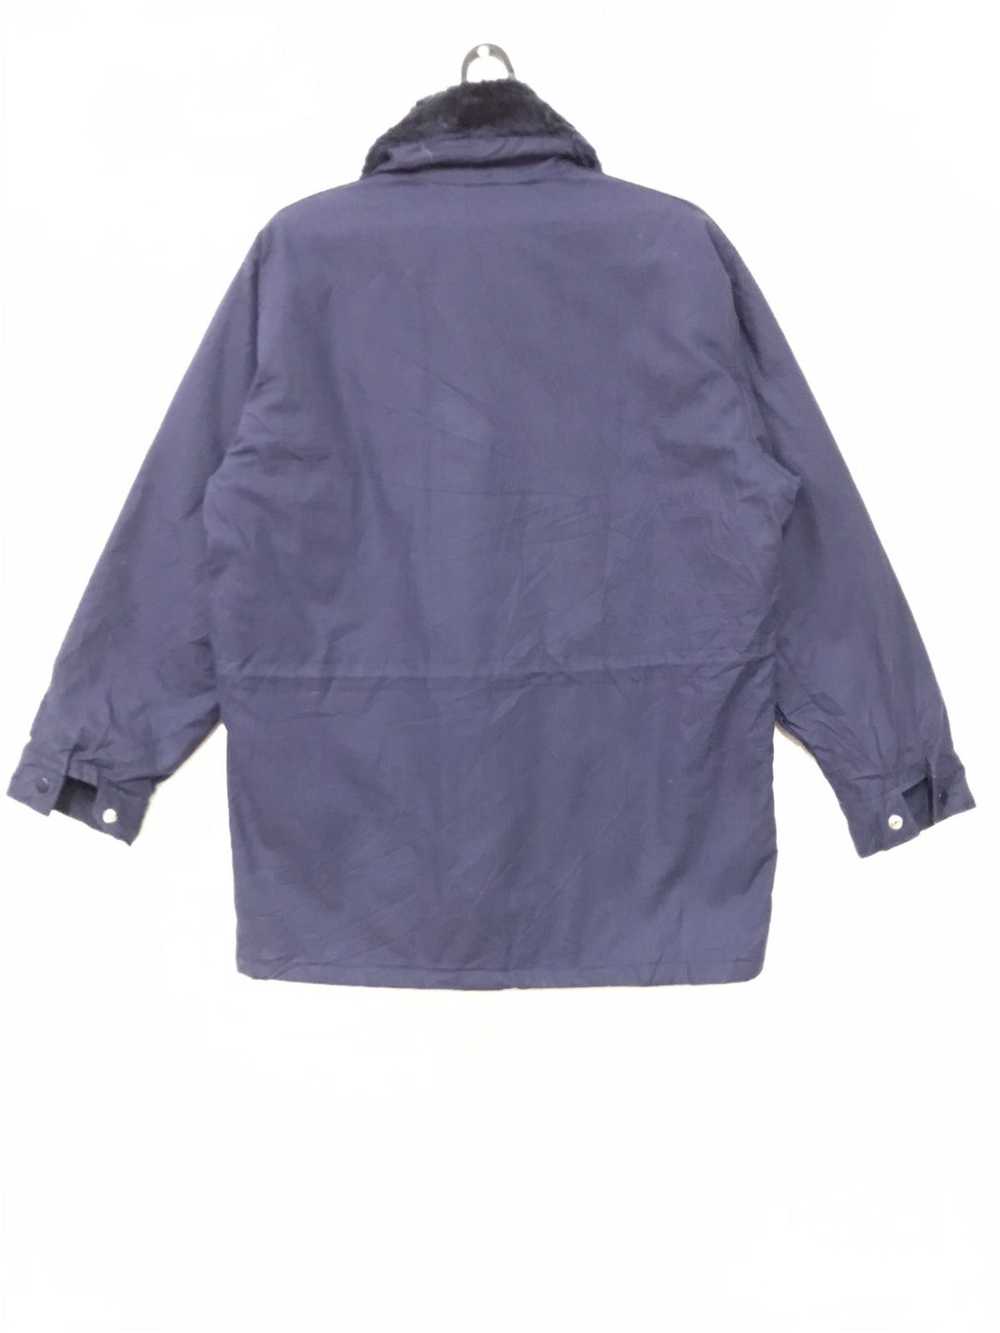 Japanese Brand × Ski Mowint Workwear Jacket - image 4